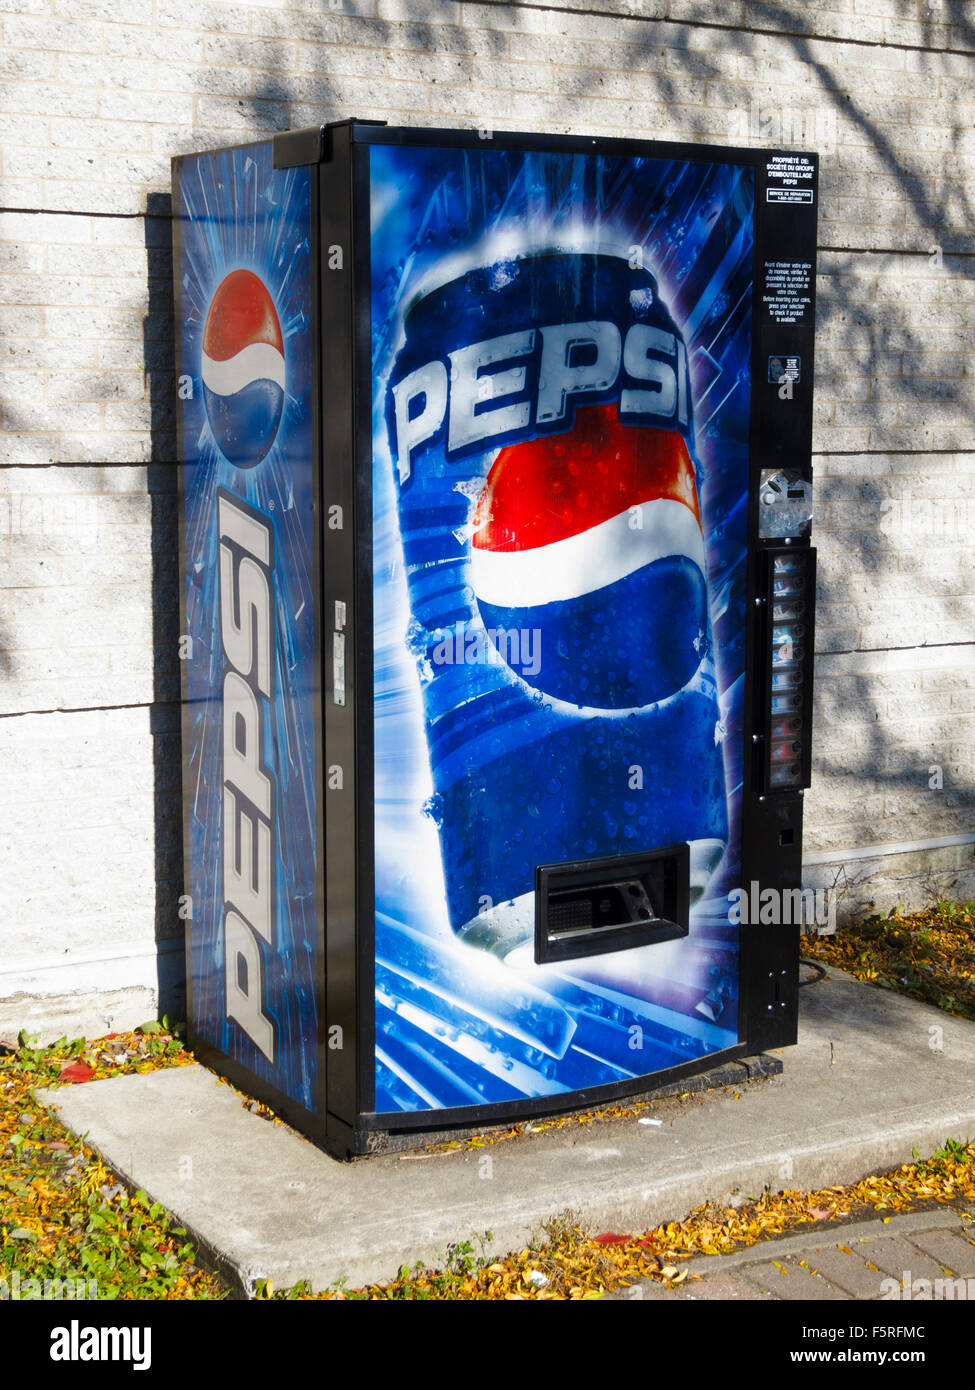 Pepsi Vending Machine Parts